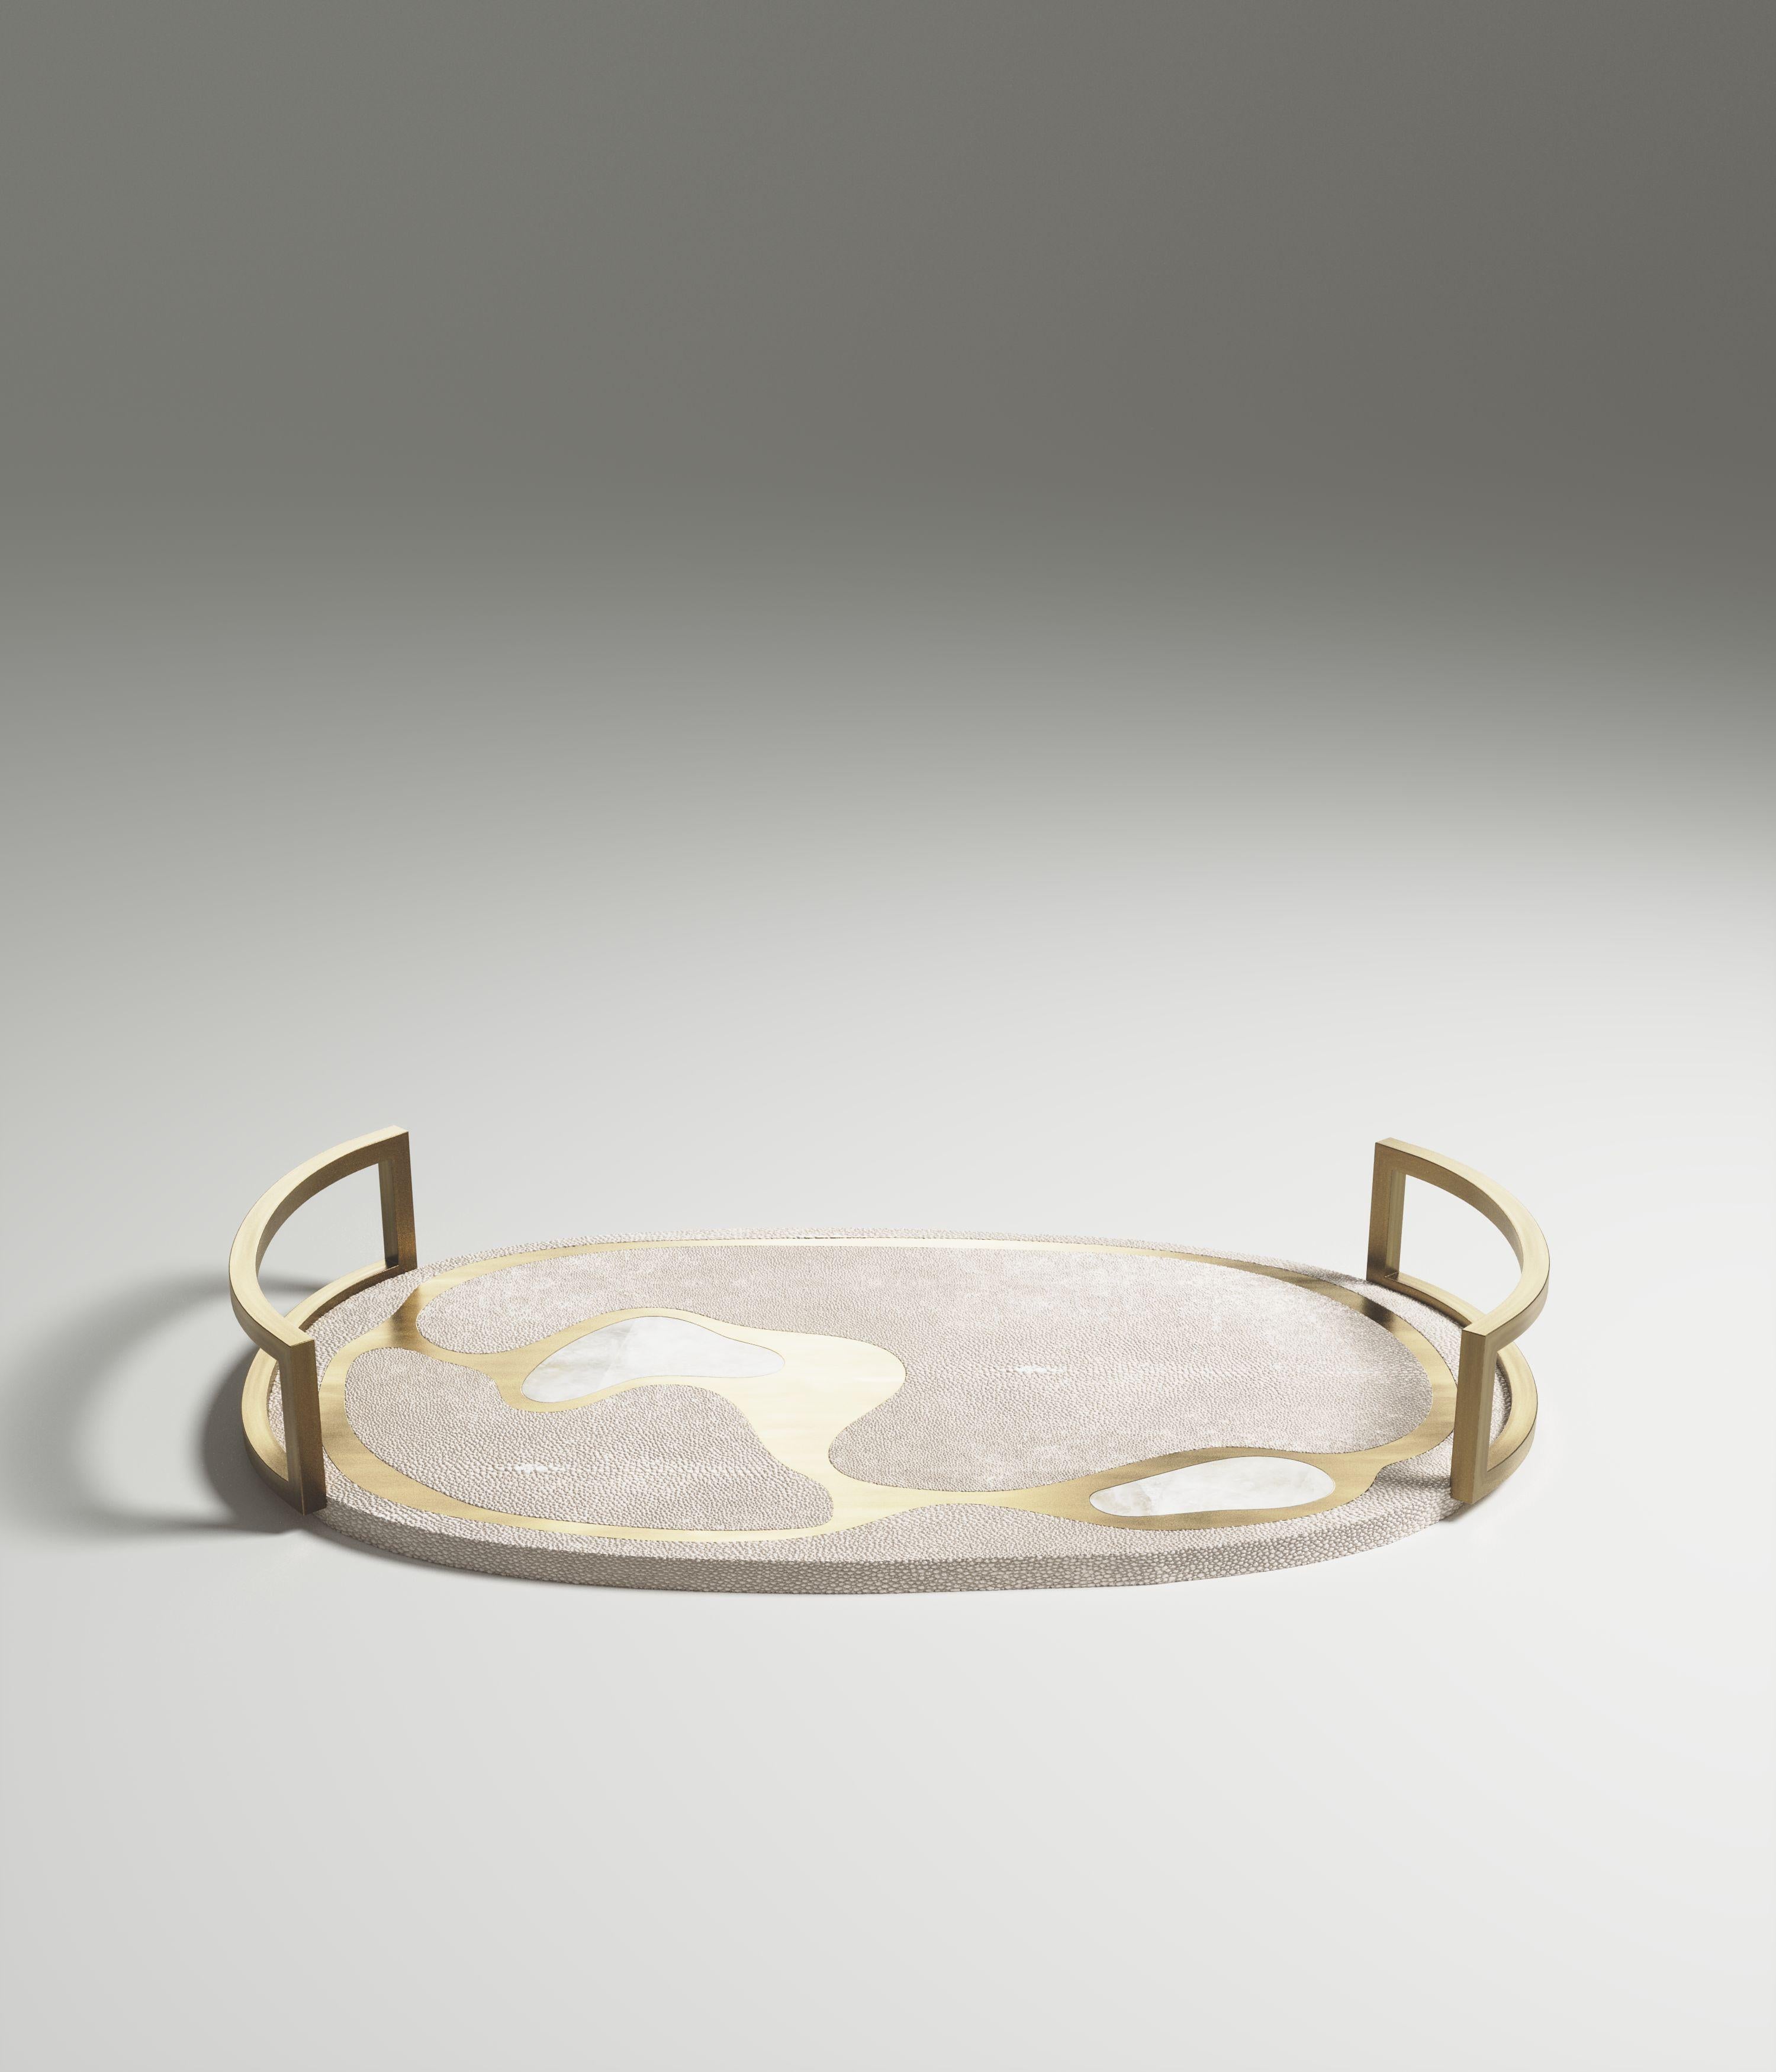 Das ovale Tablett Mask von Kifu Paris ist ein vielseitiges und organisches Stück. Die amorphe Platte und der Sockel sind mit einer Mischung aus cremefarbenem Chagrin, weißem Quarz und Messing in Bronze-Patina eingelegt. Dieses Stück wurde von Kifu